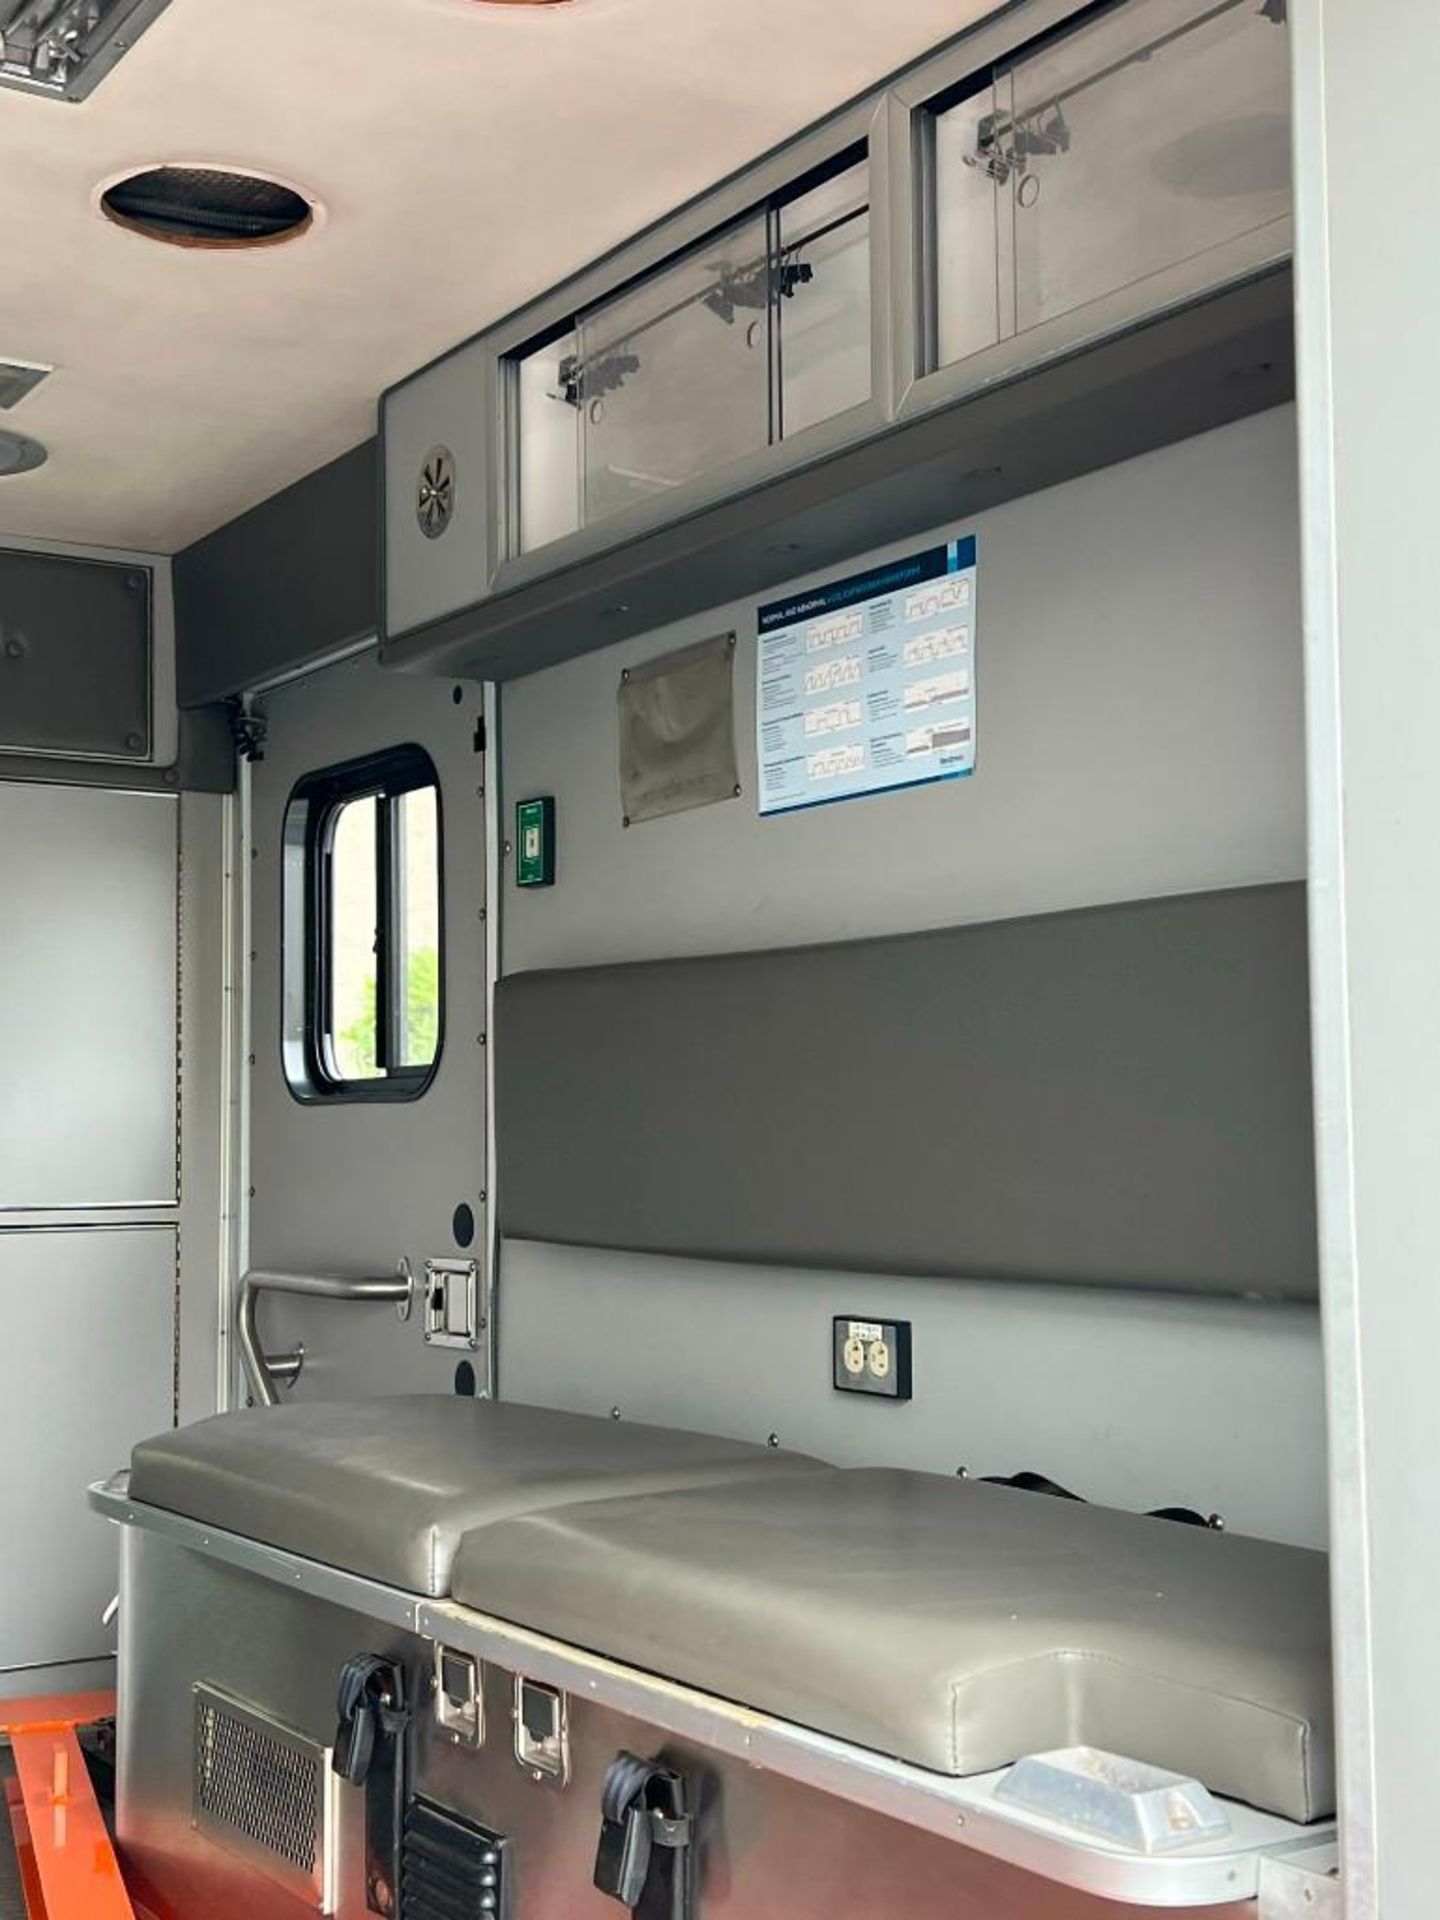 2013 GM G33503 Ambulance - Image 11 of 12